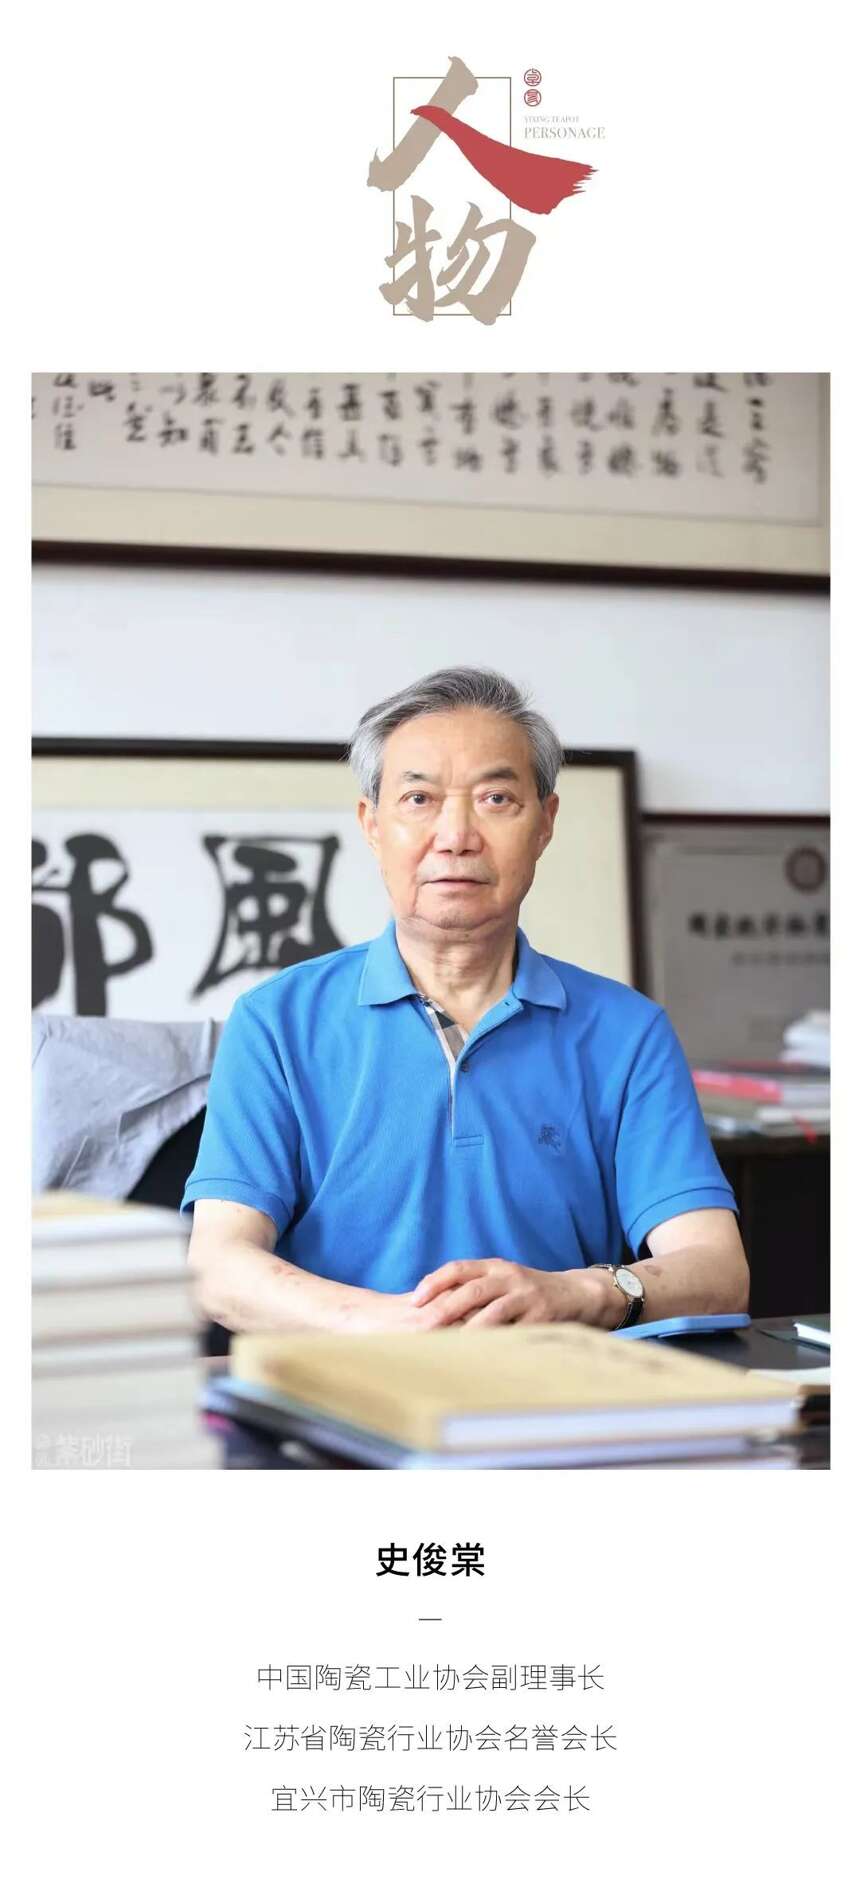 宜兴市陶瓷行业协会二十周年 史俊棠会长展望过往寄语未来